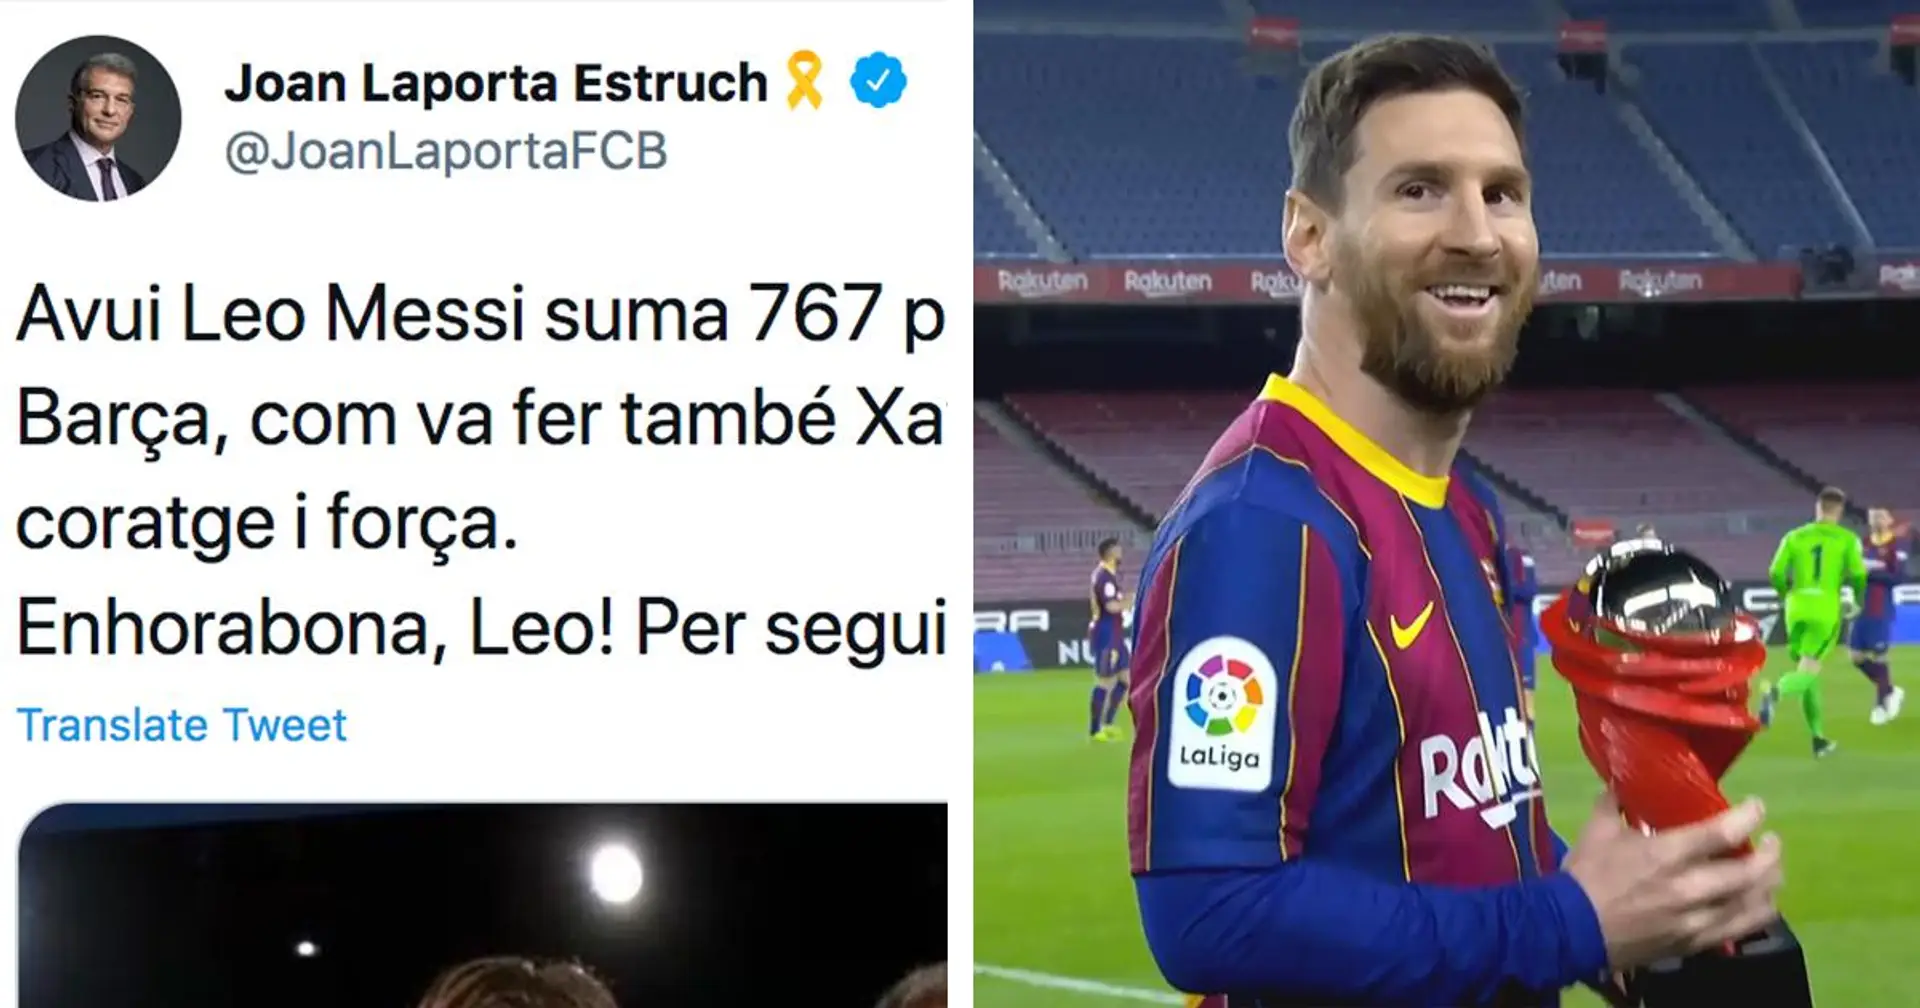 "Continue à en ajouter de plus en plus": Joan Laporta envoie un message à Messi alors que Leo égale le record d'apparition de Xavi